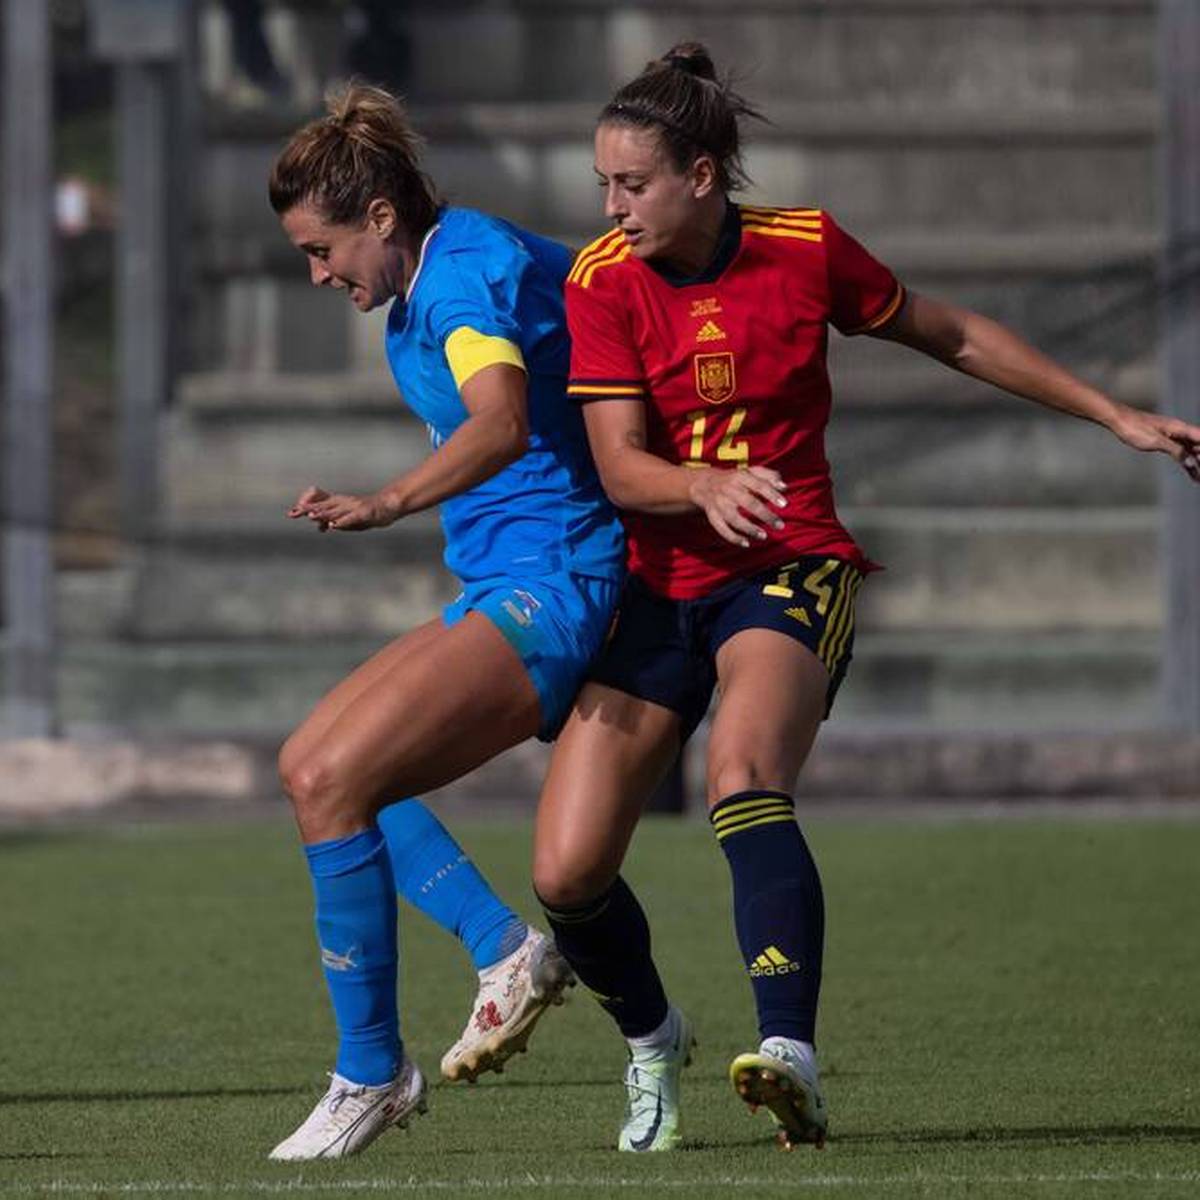 Spanien muss bei der anstehenden Frauen-EM auf Alexia Putellas verzichten. Die Kapitänin verletzt sich im Training schwer am Knie.